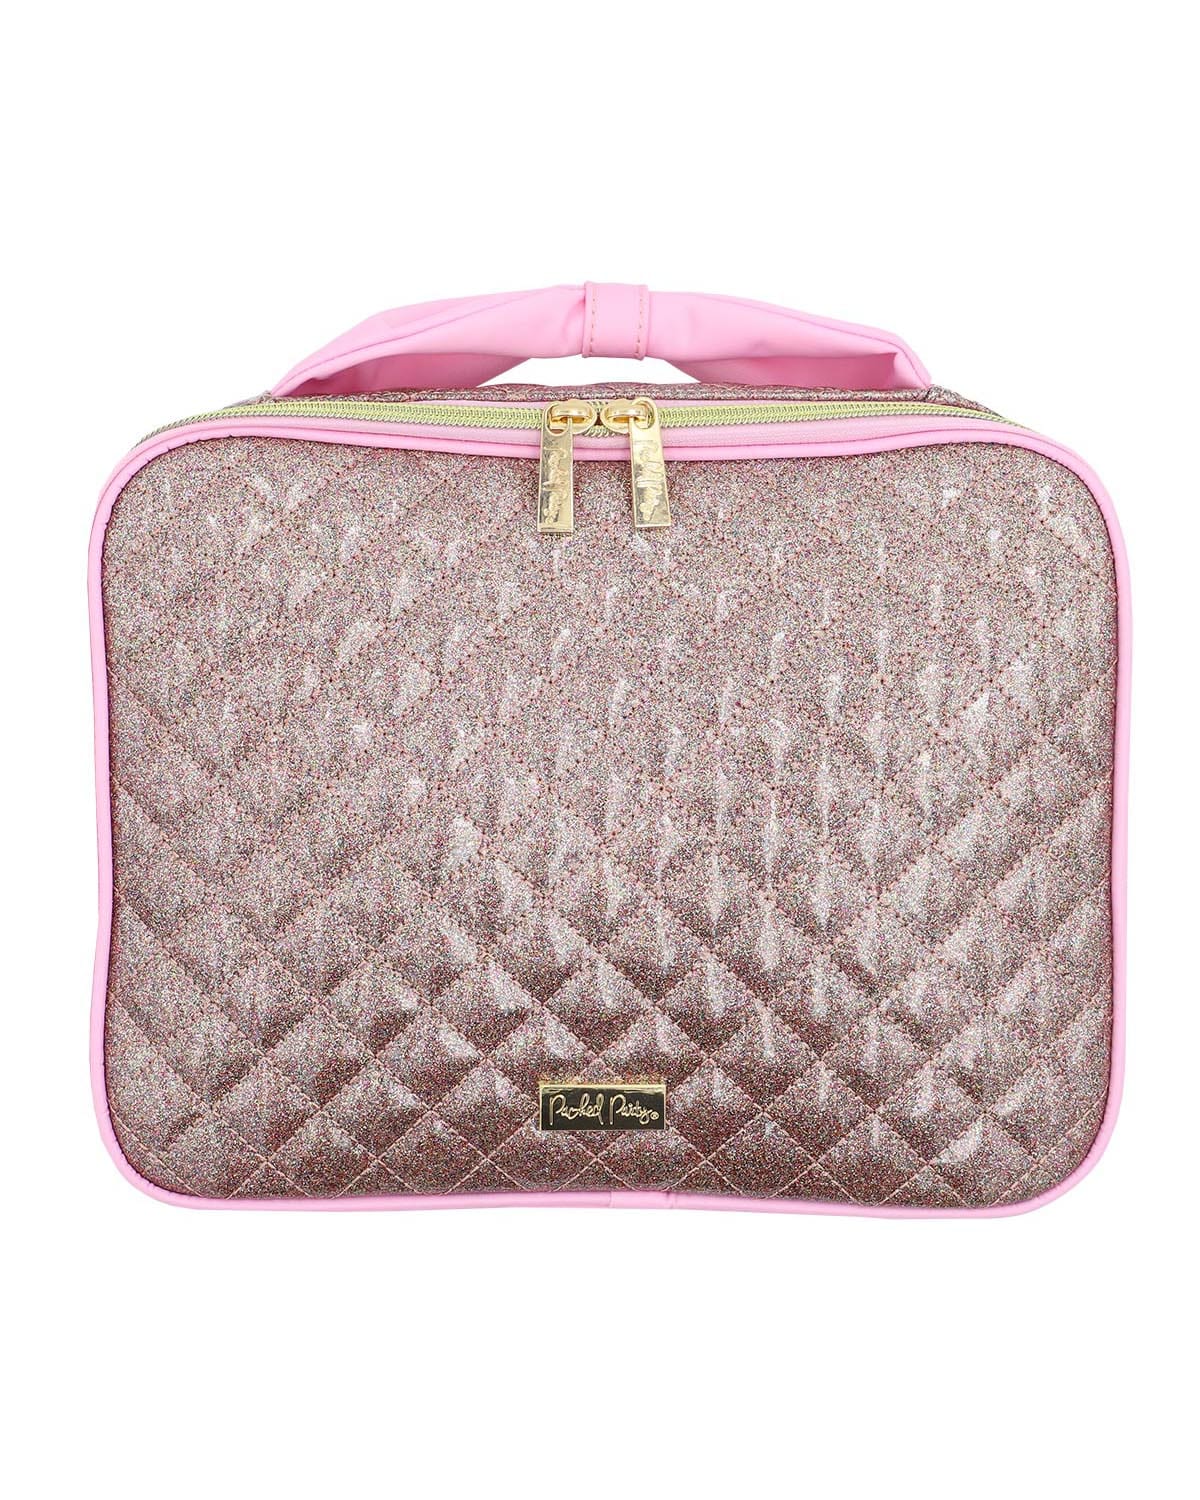 VS Victoria's Secret Makeup Cosmetics Bag Clutch Pink Shimmer